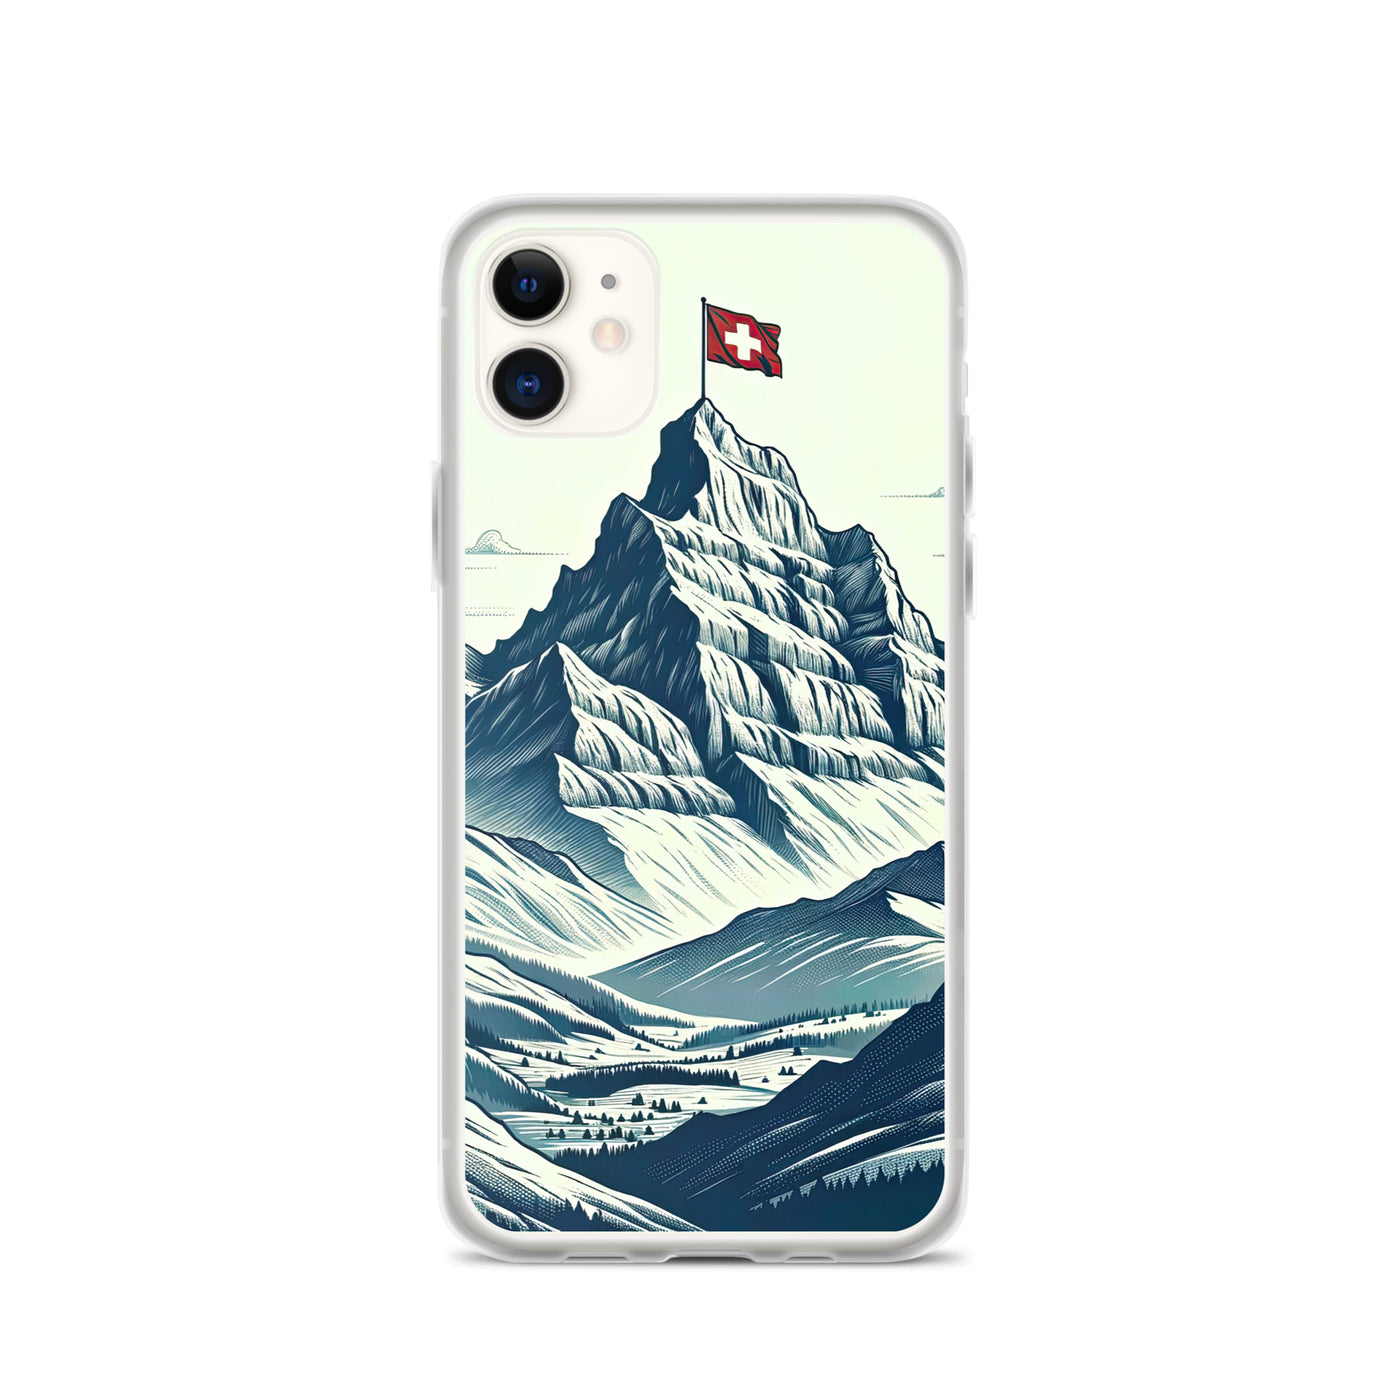 Ausgedehnte Bergkette mit dominierendem Gipfel und wehender Schweizer Flagge - iPhone Schutzhülle (durchsichtig) berge xxx yyy zzz iPhone 11